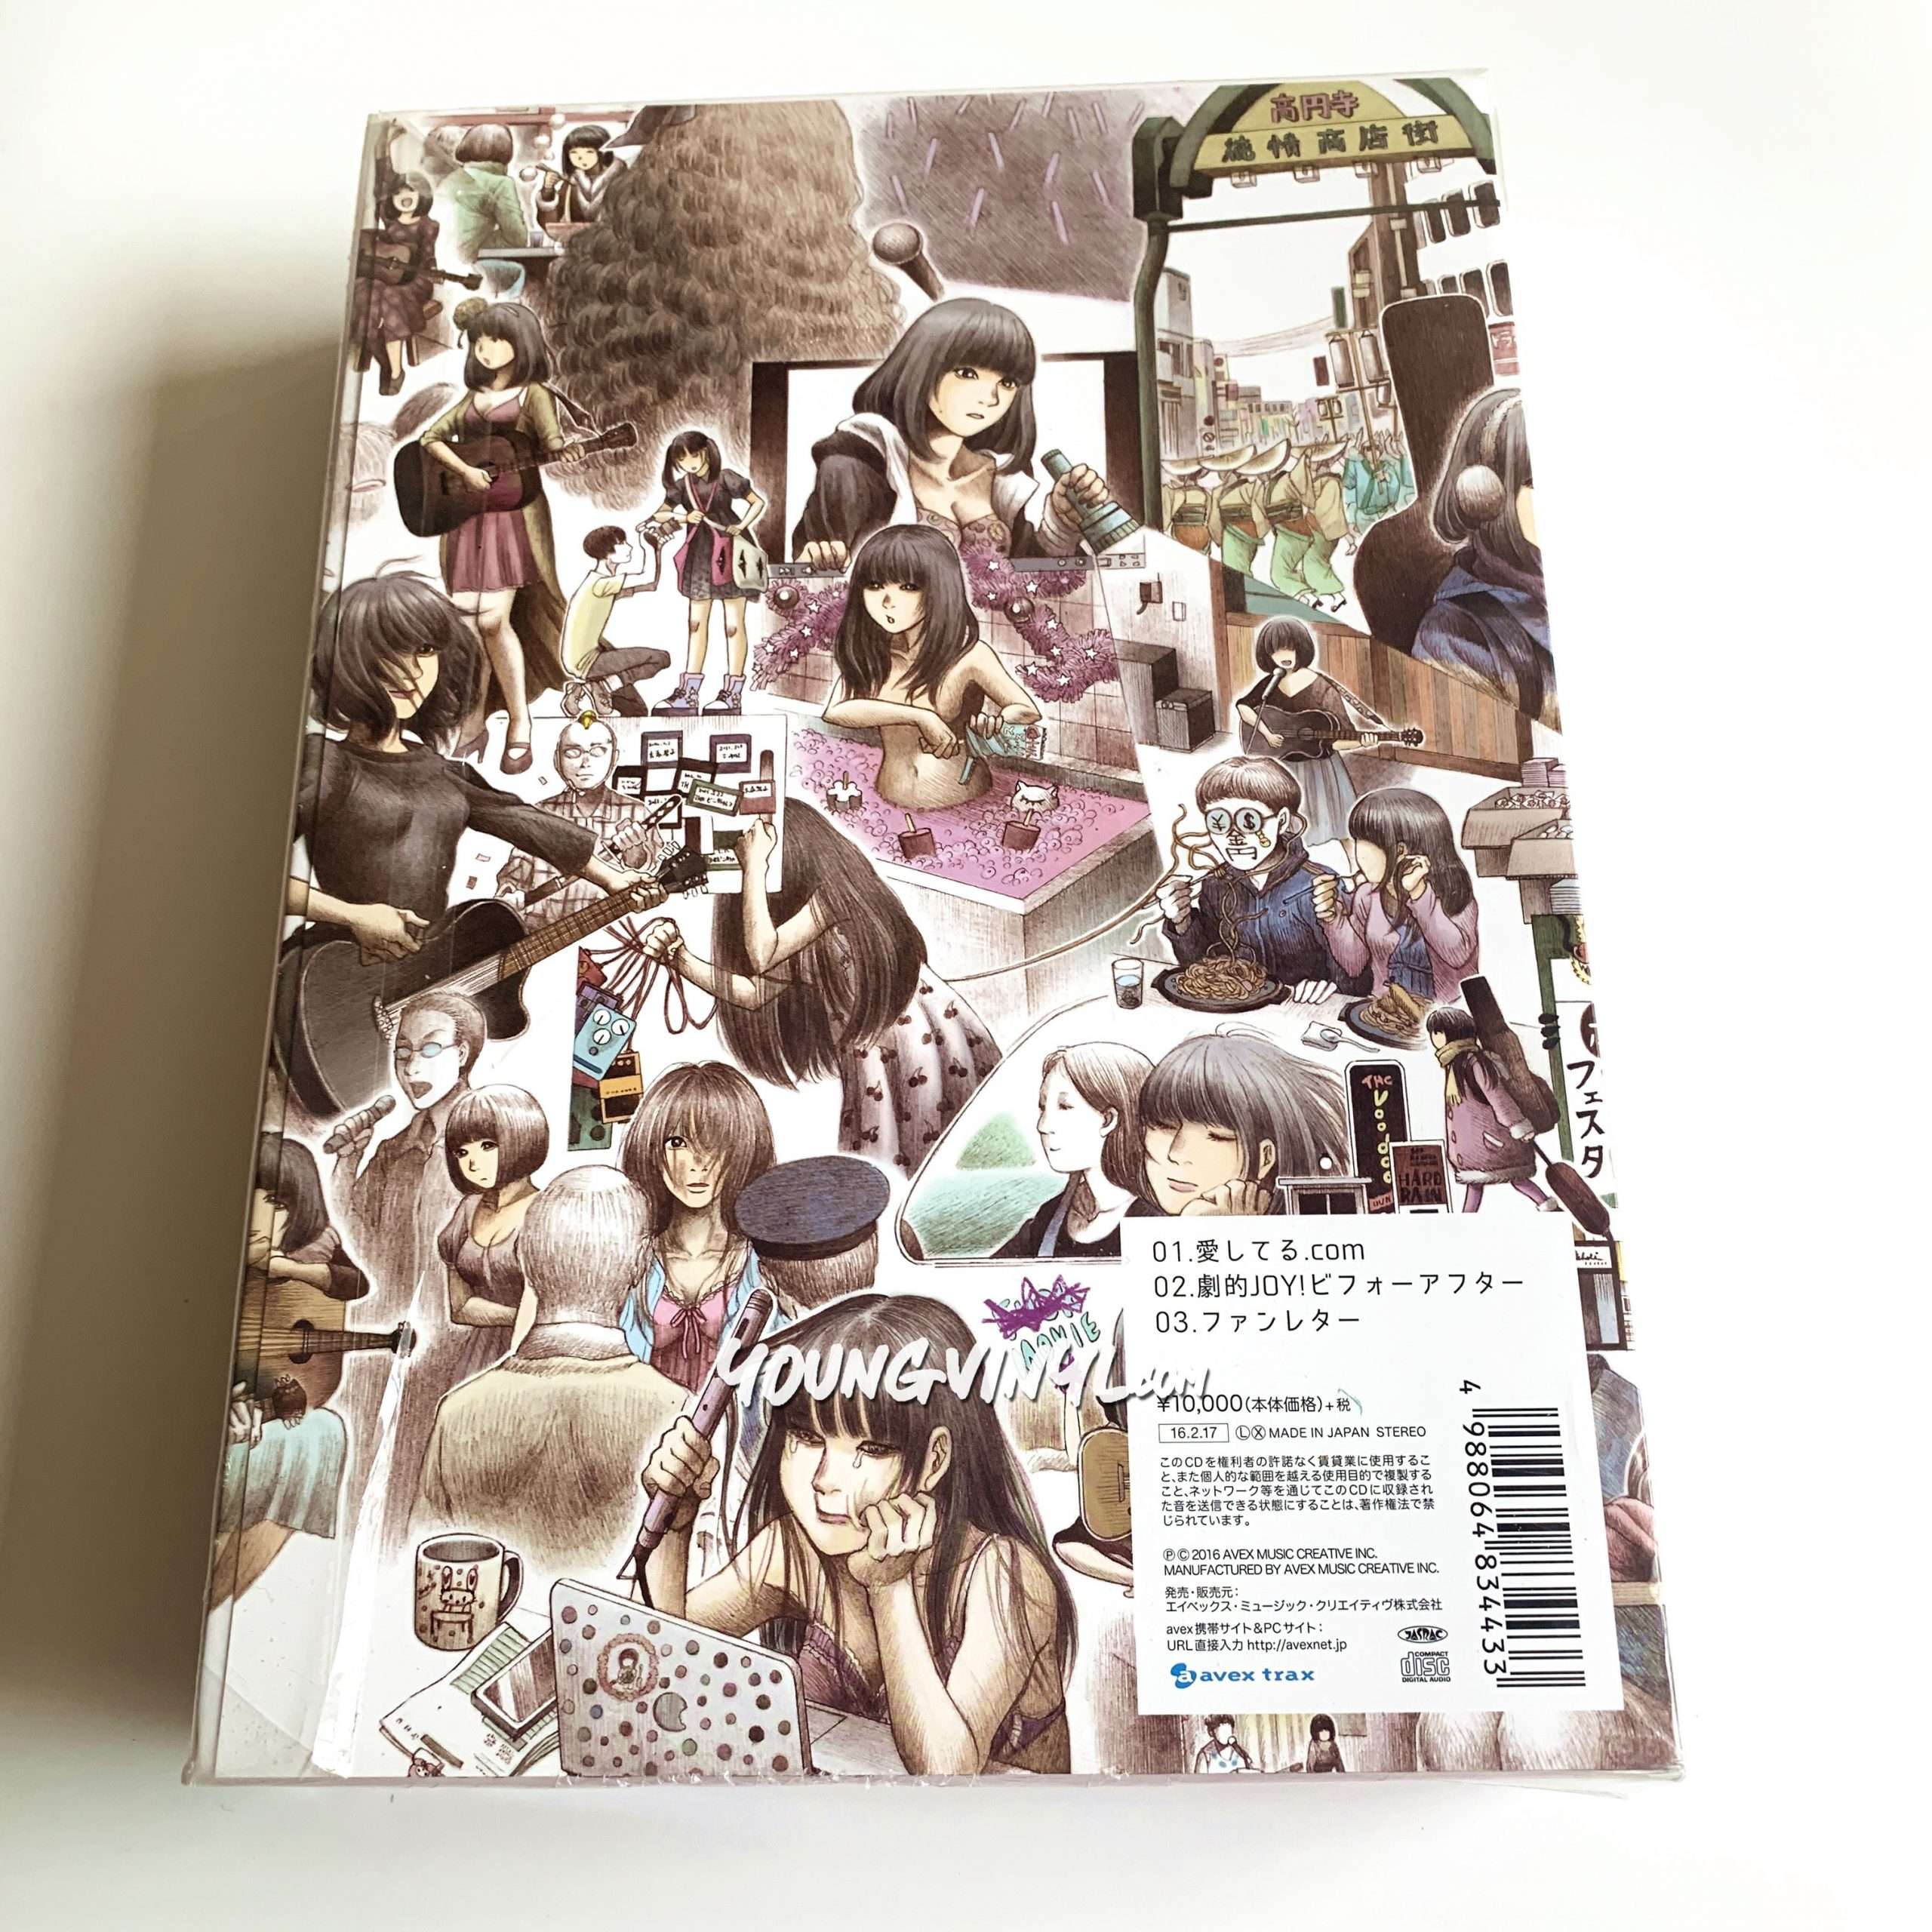 Seiko Oomori 愛してる.com CD Box Set Limited Edition Sealed 大森 